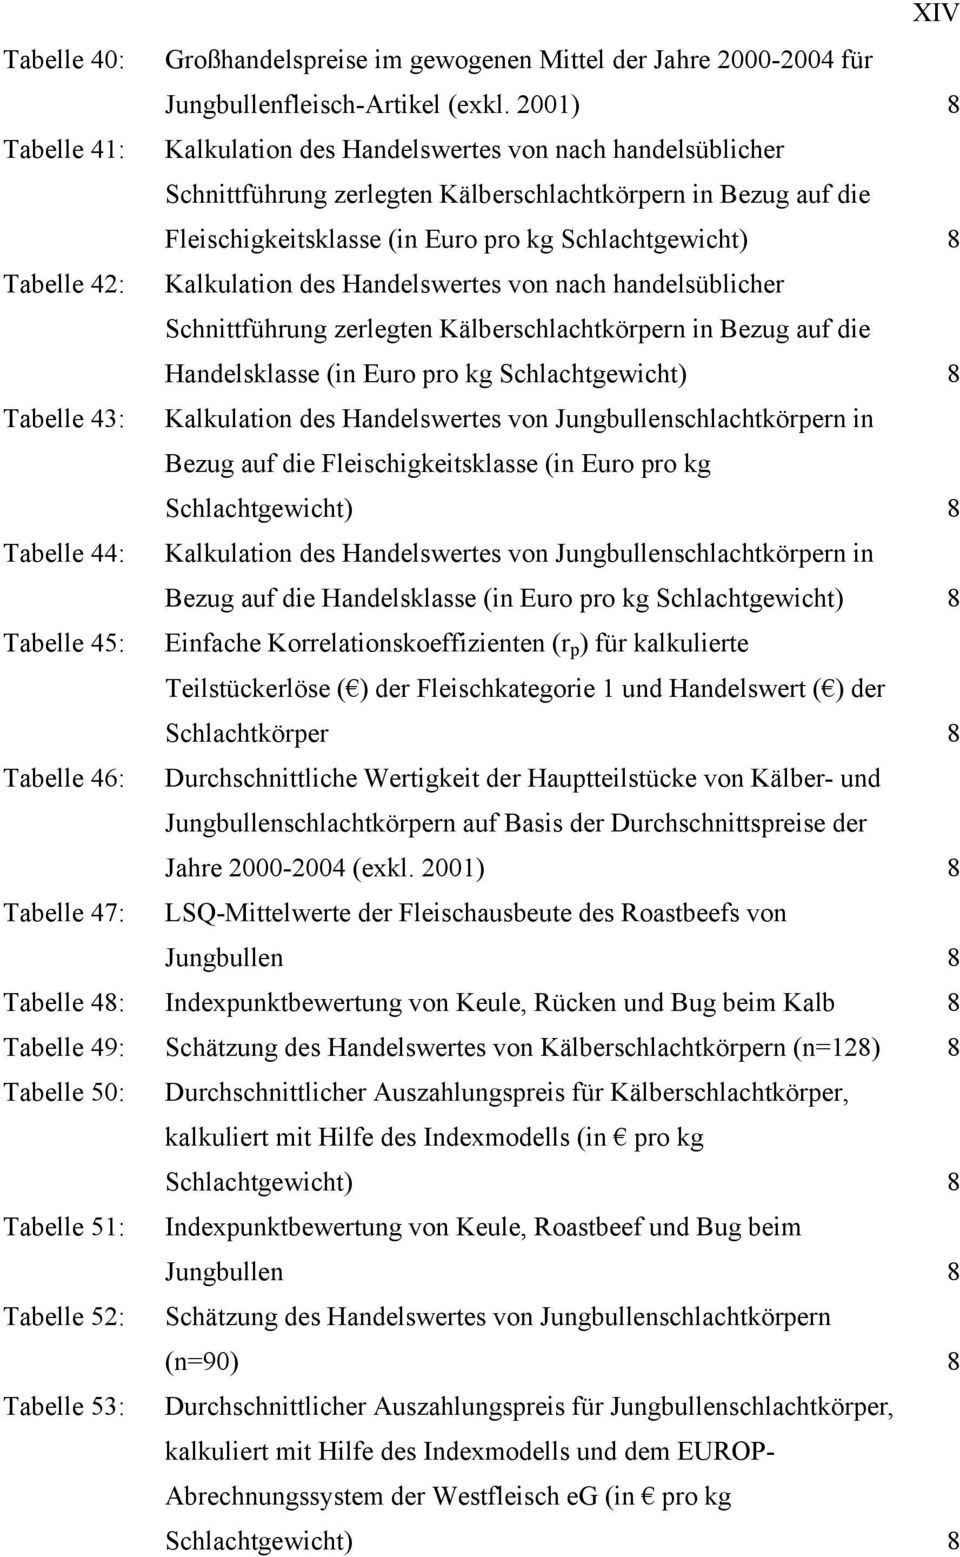 Tabelle 42: Kalkulation des Handelswertes von nach handelsüblicher Schnittführung zerlegten Kälberschlachtkörpern in Bezug auf die Handelsklasse (in Euro pro kg Schlachtgewicht) 8 Tabelle 43: